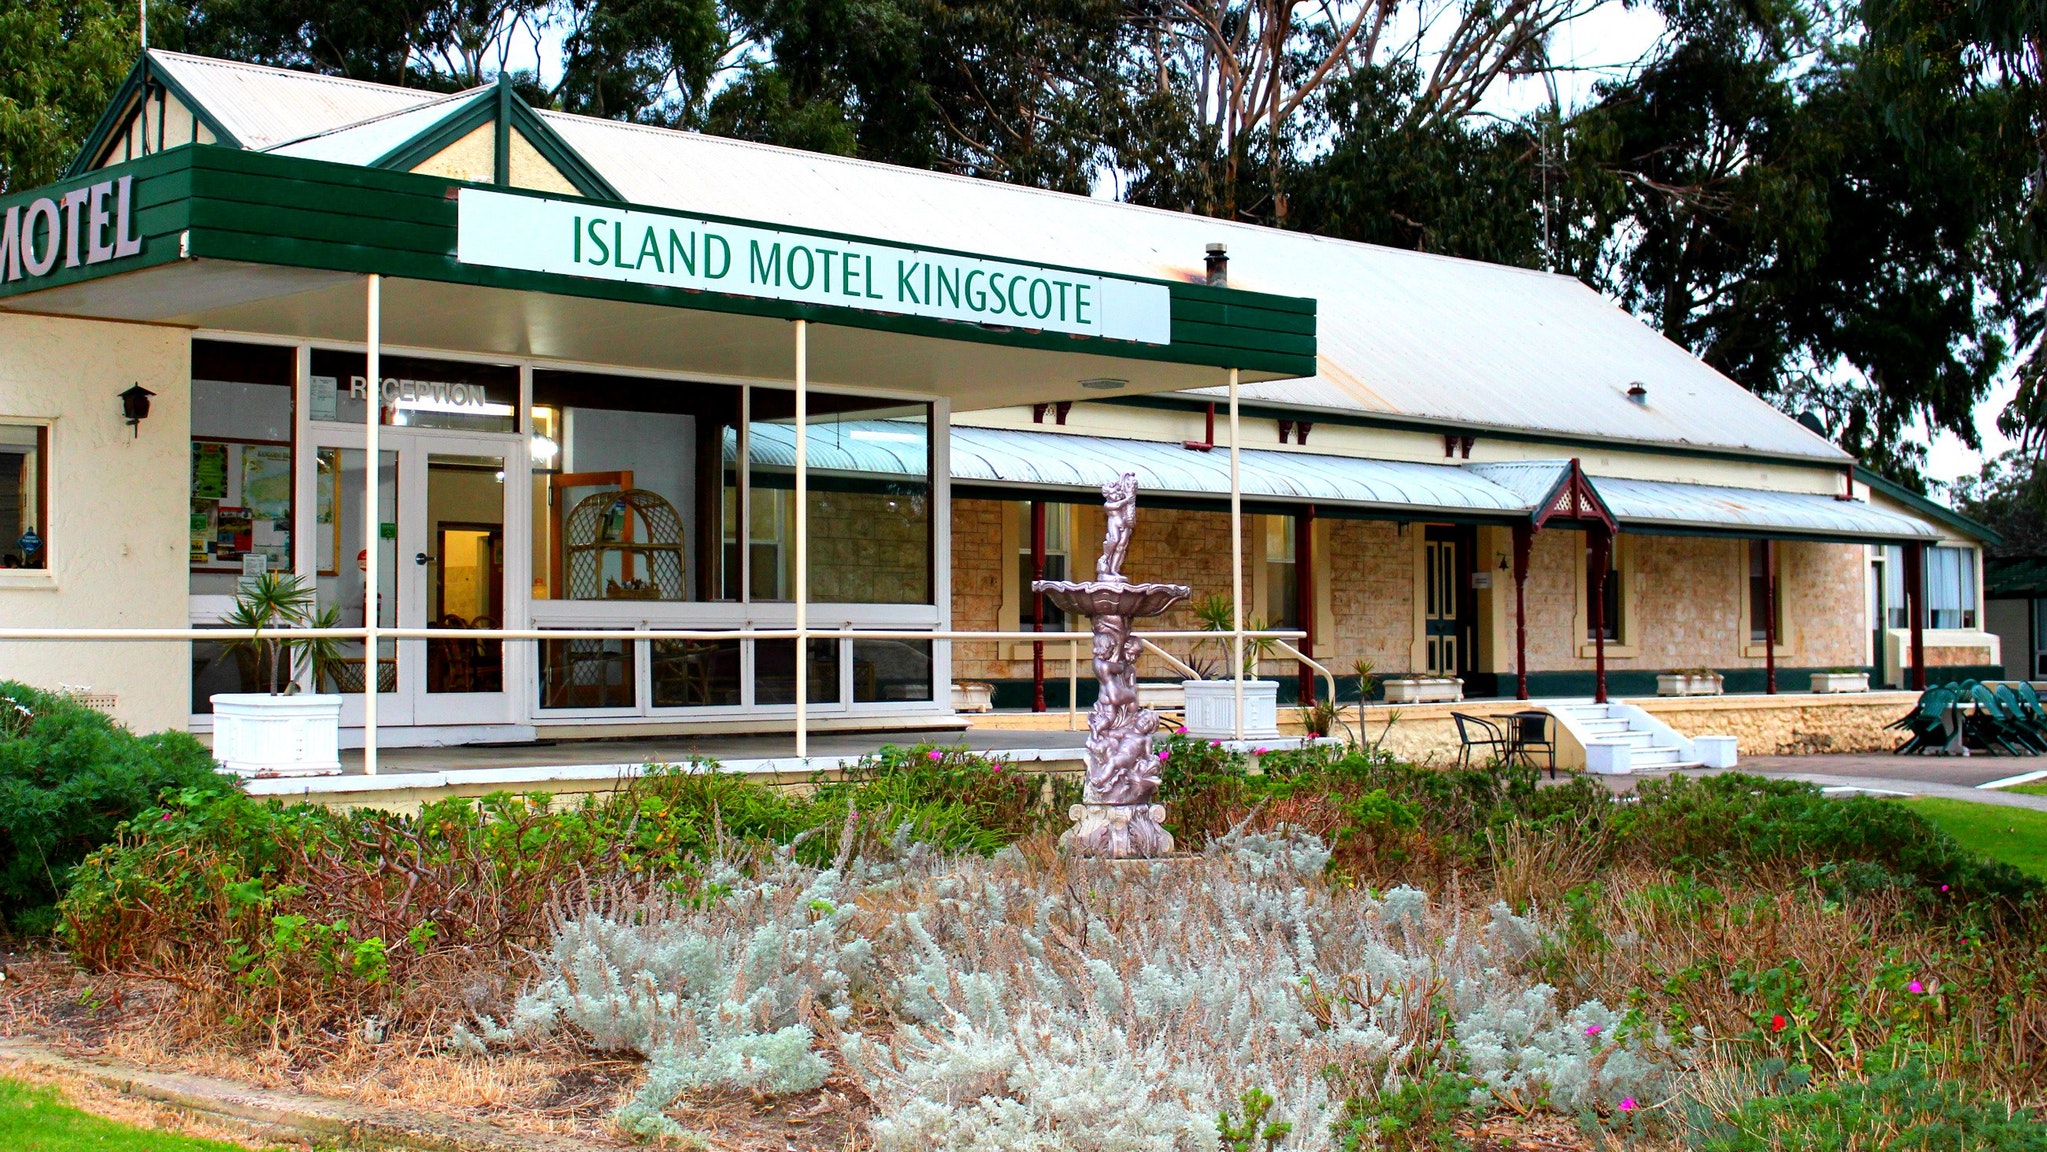 Island Motel Kingscote - Accommodation Brunswick Heads 5